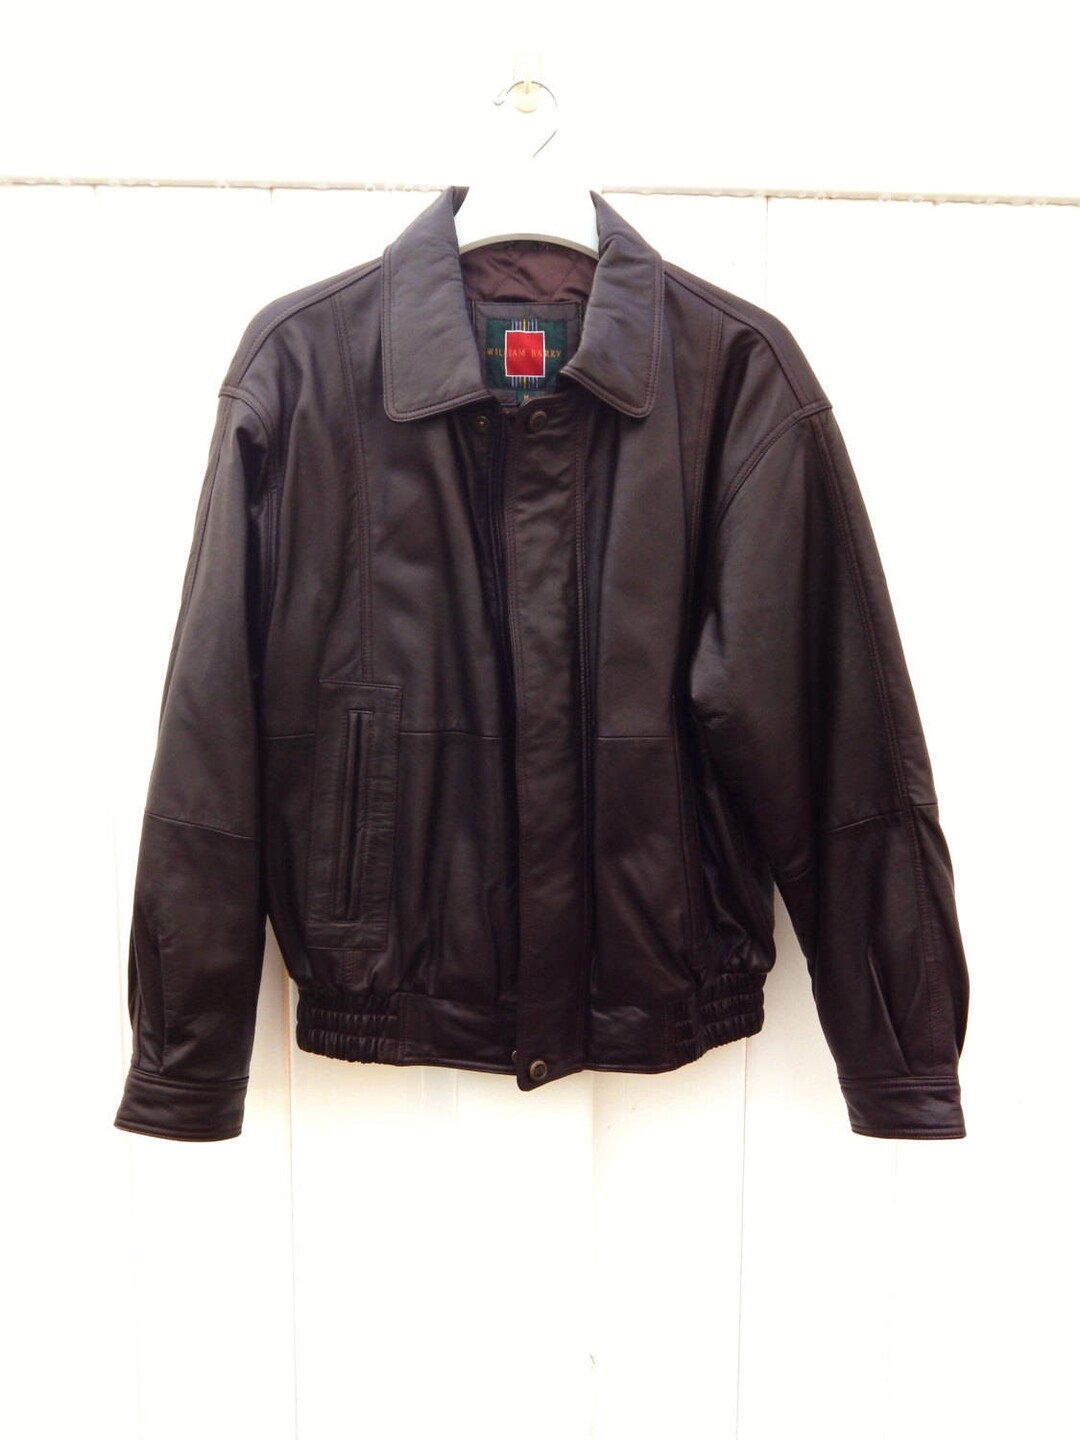 Men's Leather Jacket Dark Brown Size Medium WILLIAM BARRY - Etsy